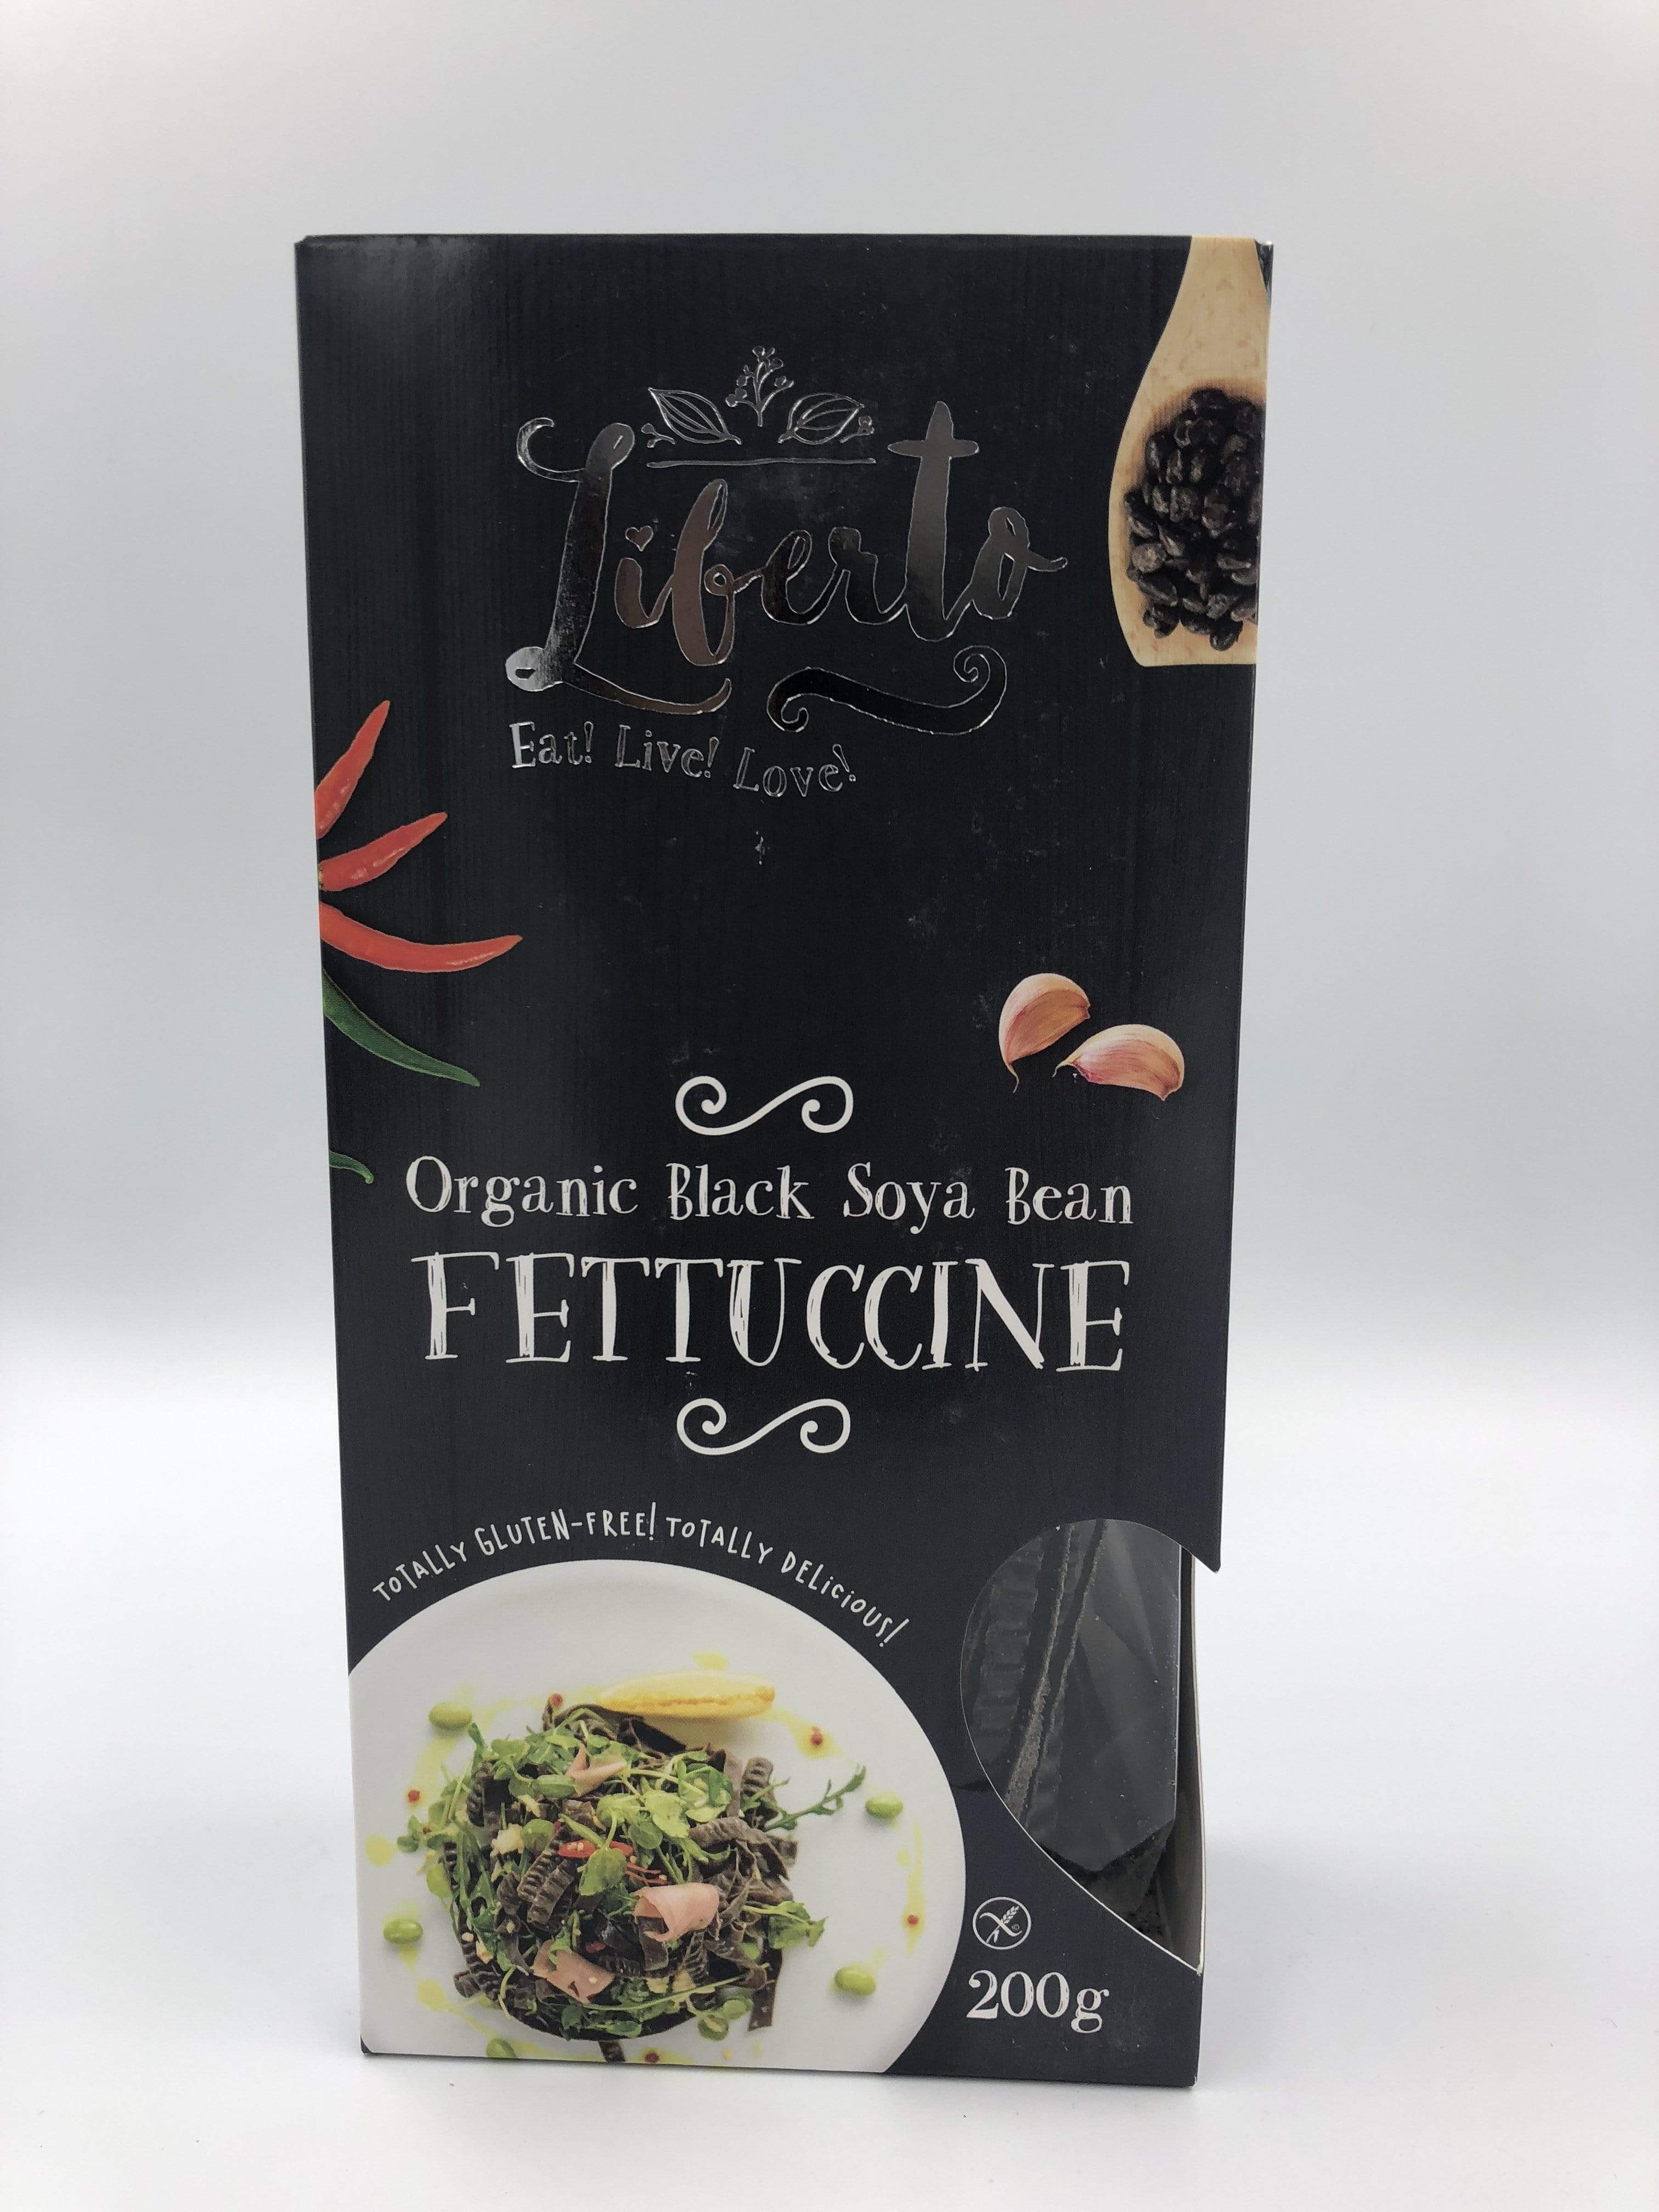 Liberto Organic Black Soya Bean 5 of Pack 200g Fettuccine